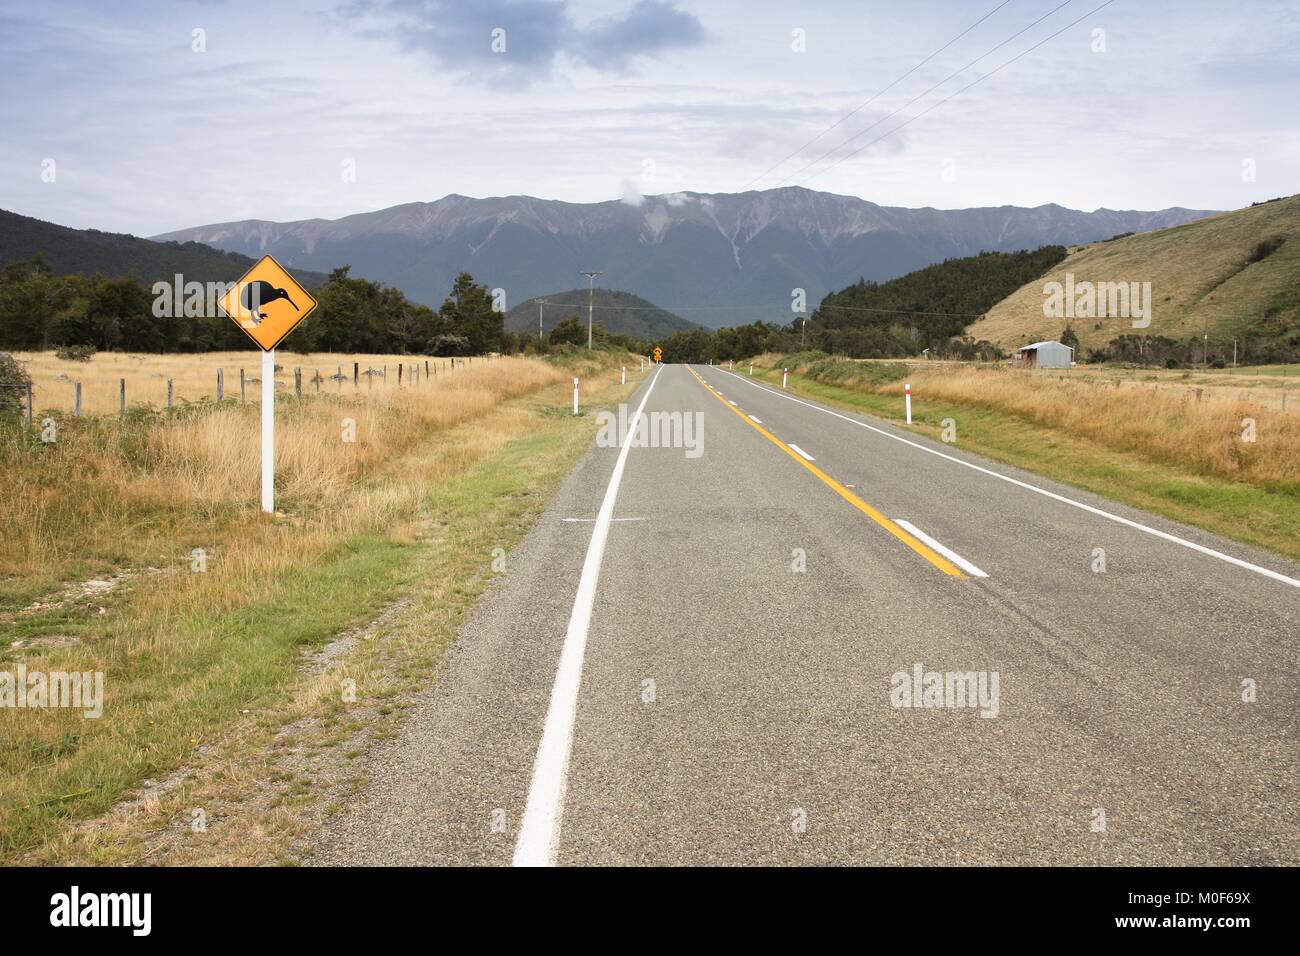 Symbole de la Nouvelle-Zélande - kiwi panneau d'avertissement. Région de Tasmanie road. Banque D'Images